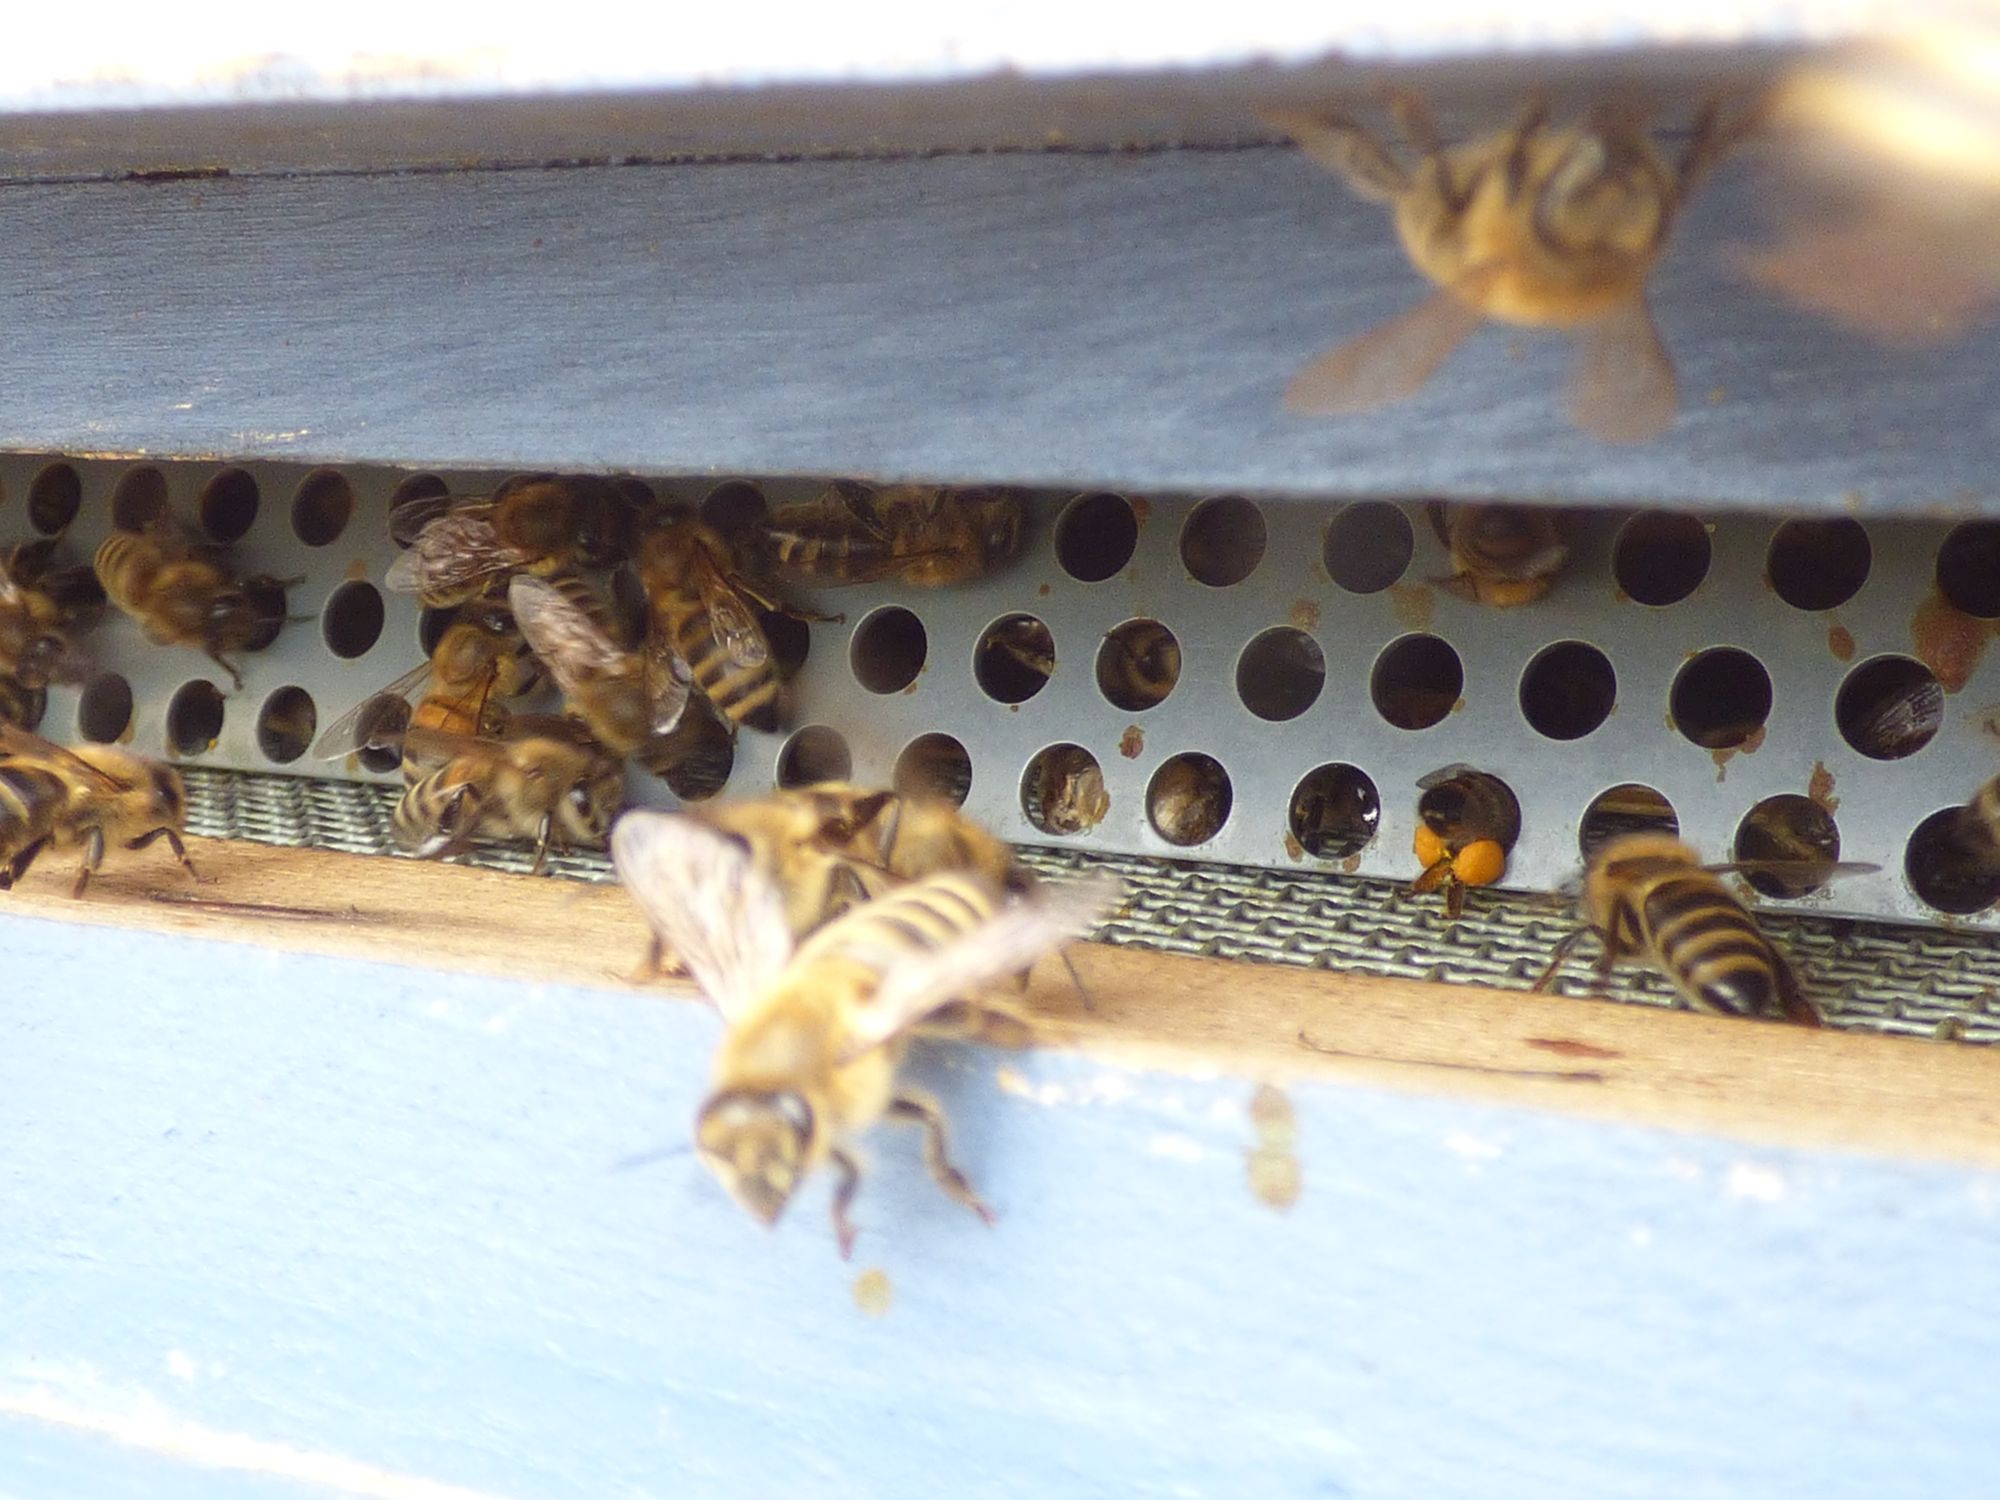 Lochstreifen mit Gitter, die Biene am 4.Loch von rechts, untere Lochleiste, zeigt gut das Prinzip